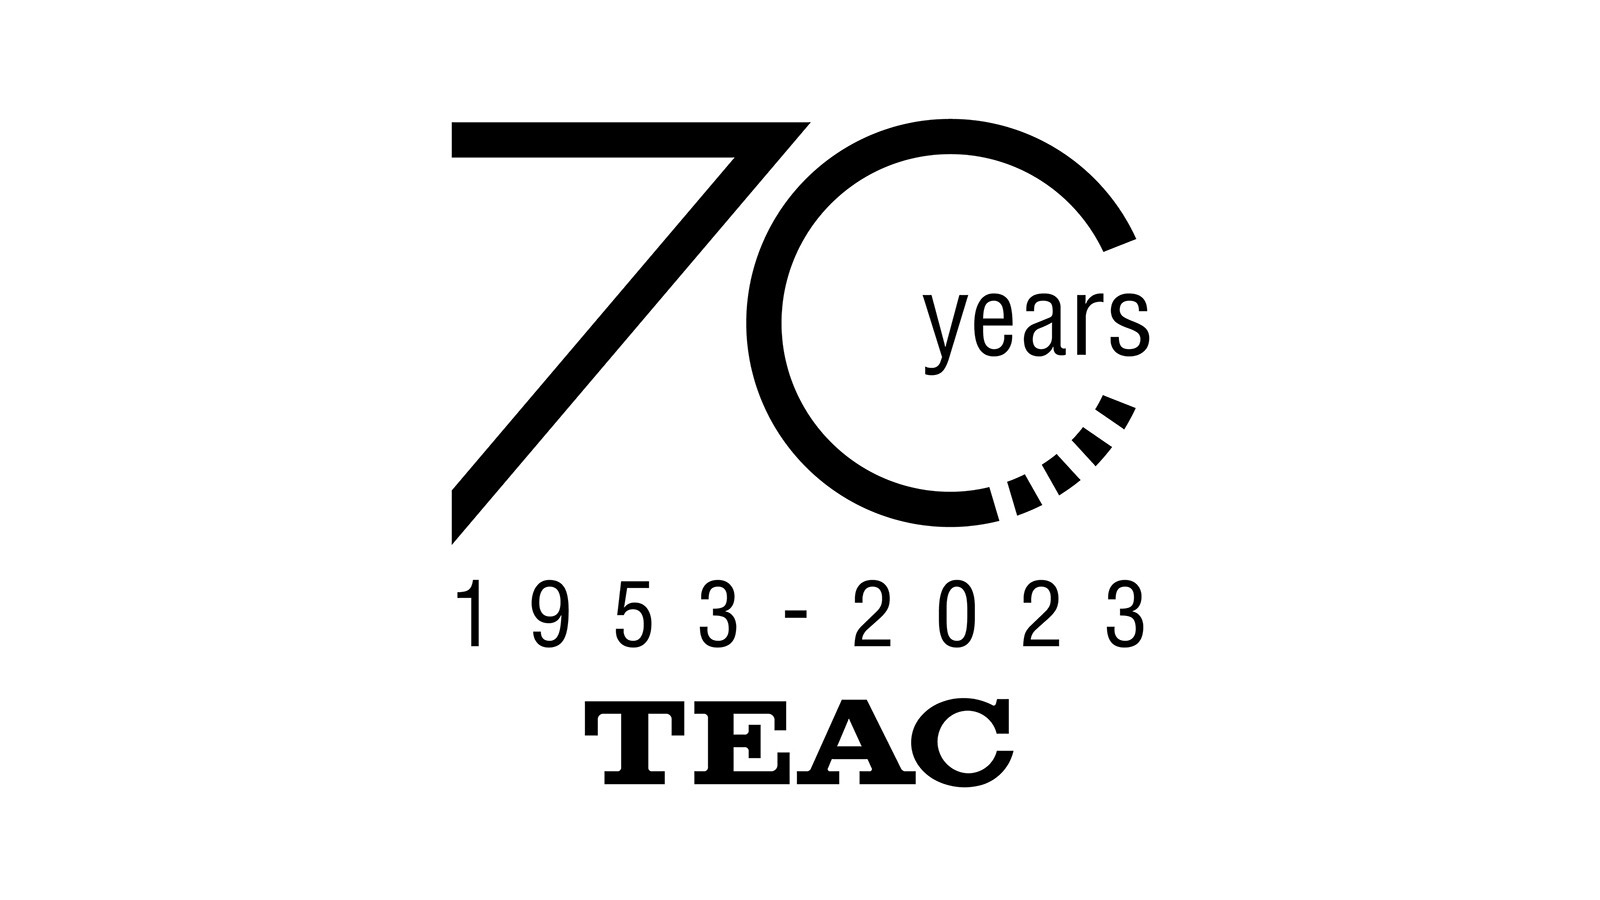 TEAC 70th